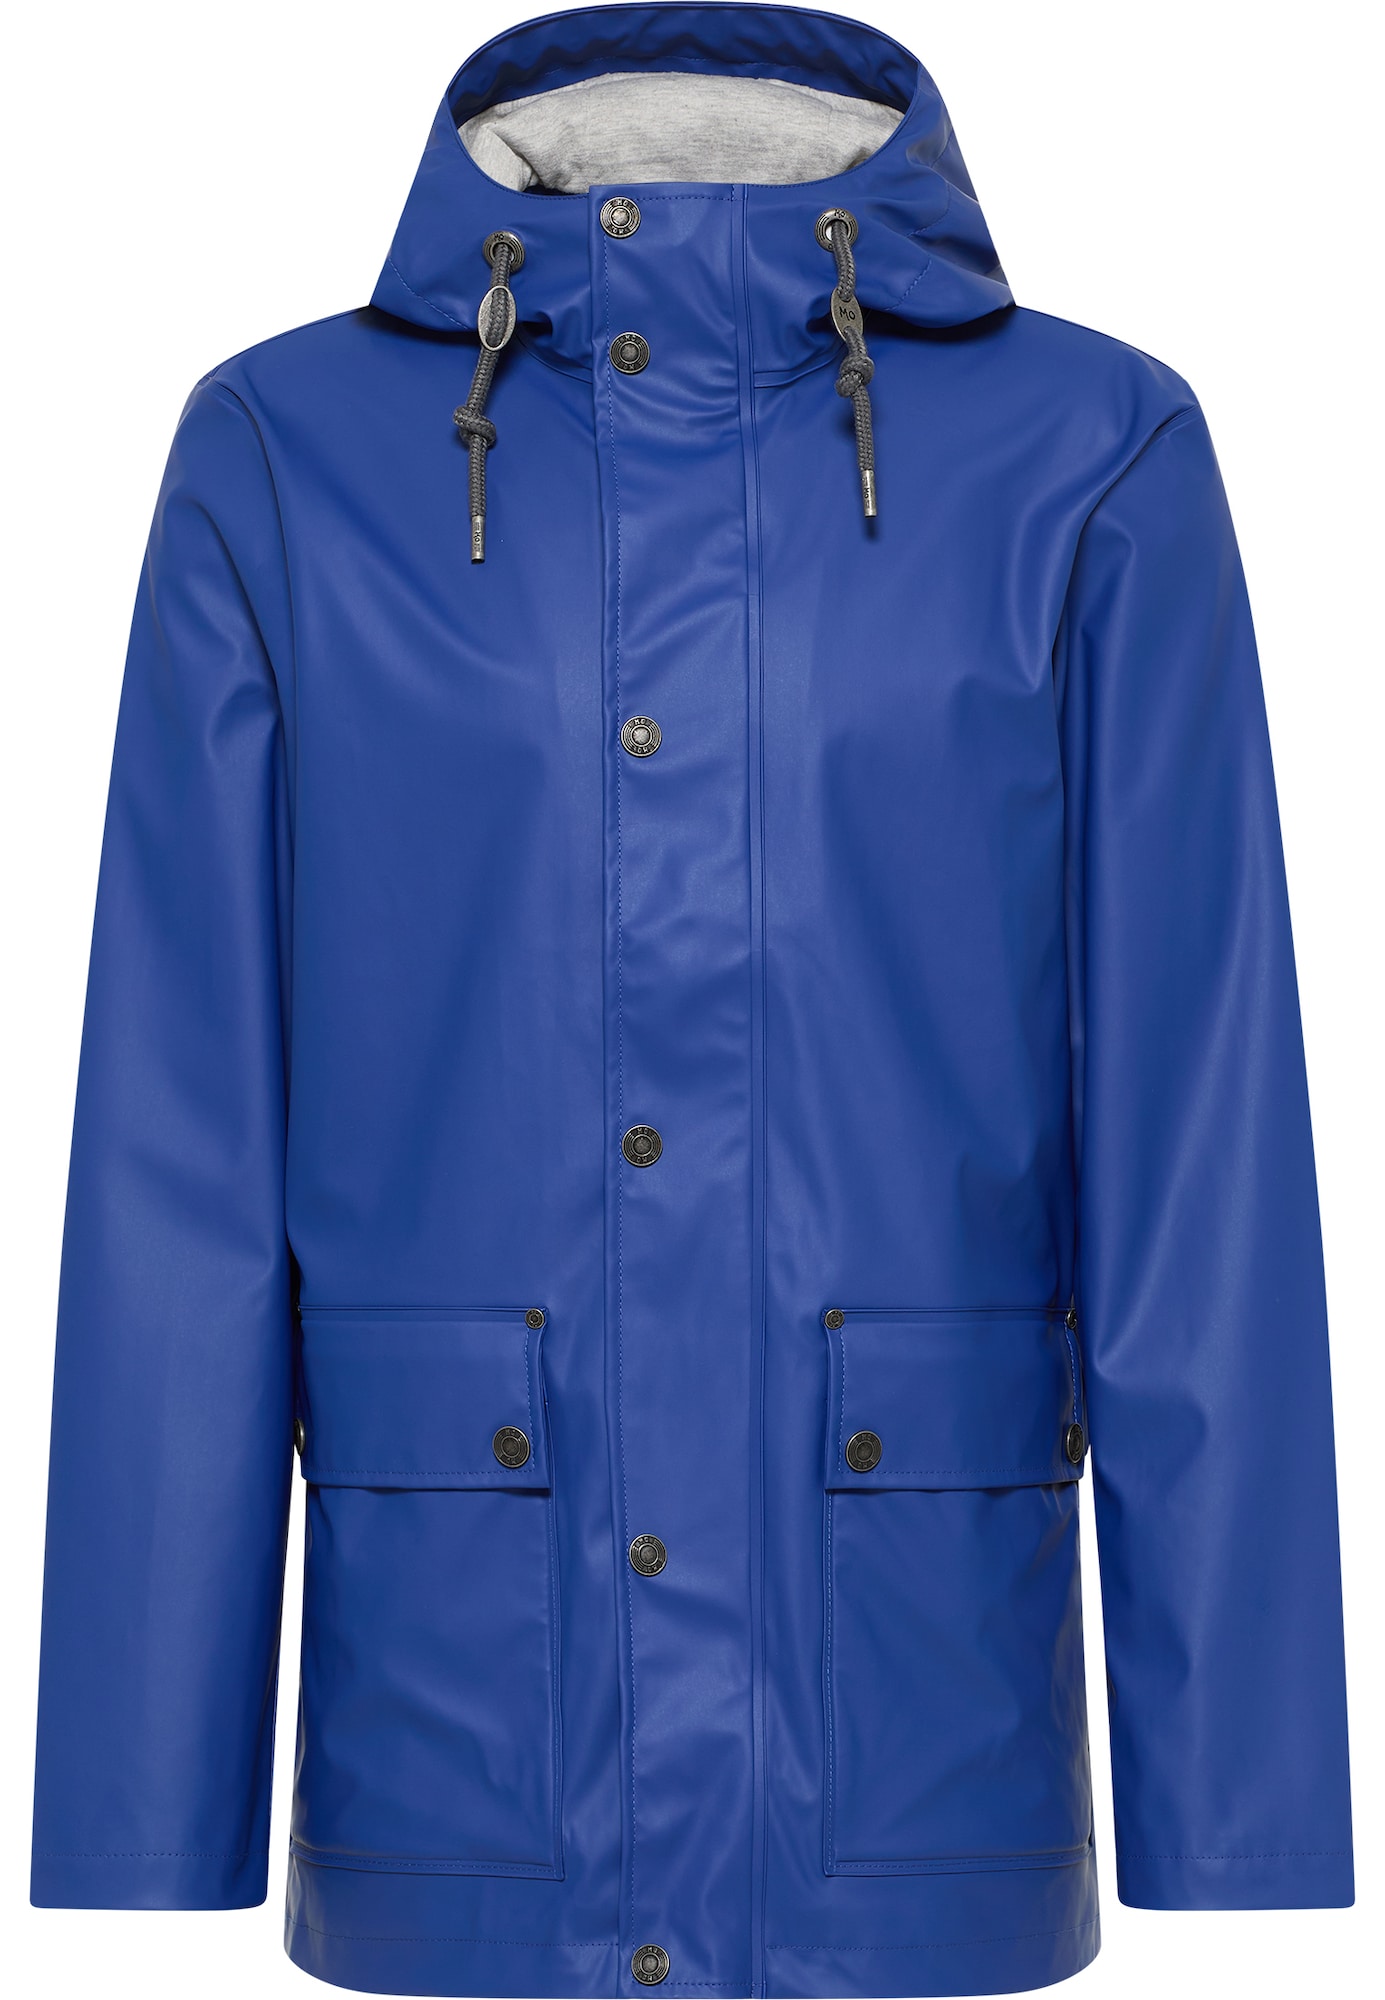 MO Funkcionalna jakna  kraljevo modra